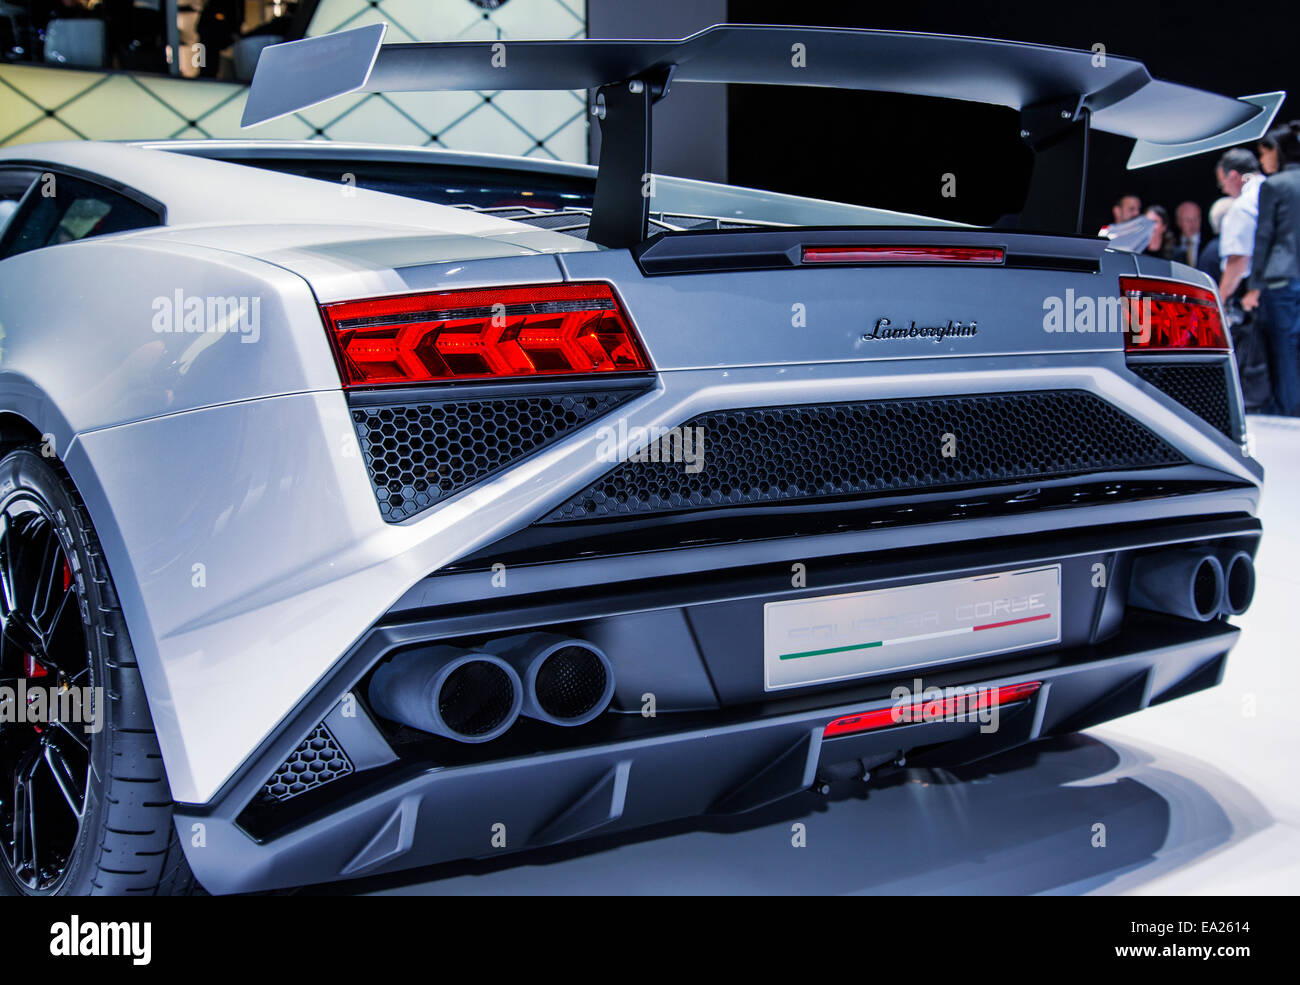 Vista posteriore di una vettura sportiva del marchio Lamborghini Foto Stock